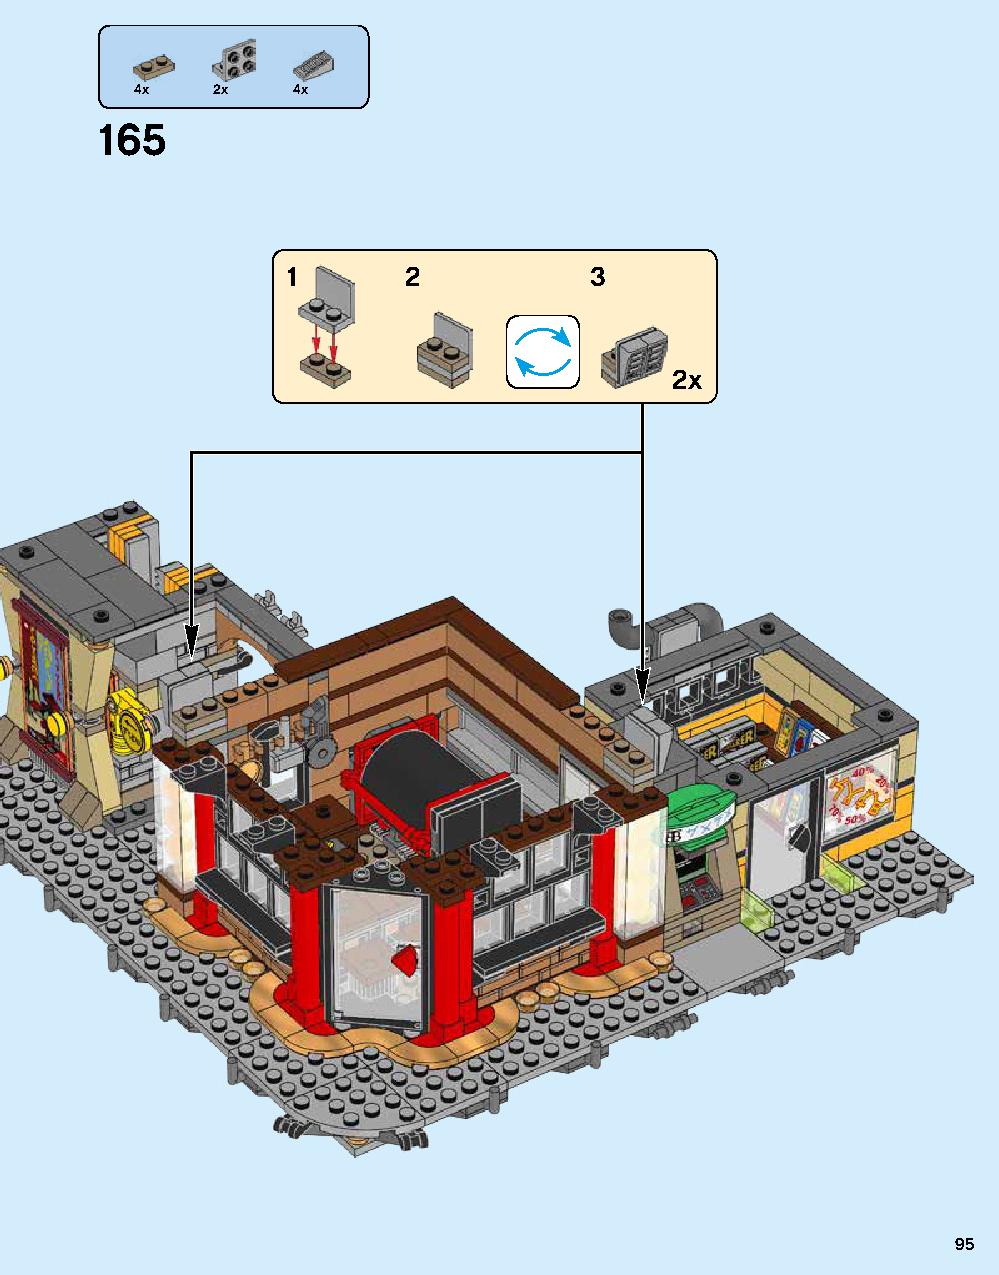 ニンジャゴー シティ 70620 レゴの商品情報 レゴの説明書・組立方法 95 page